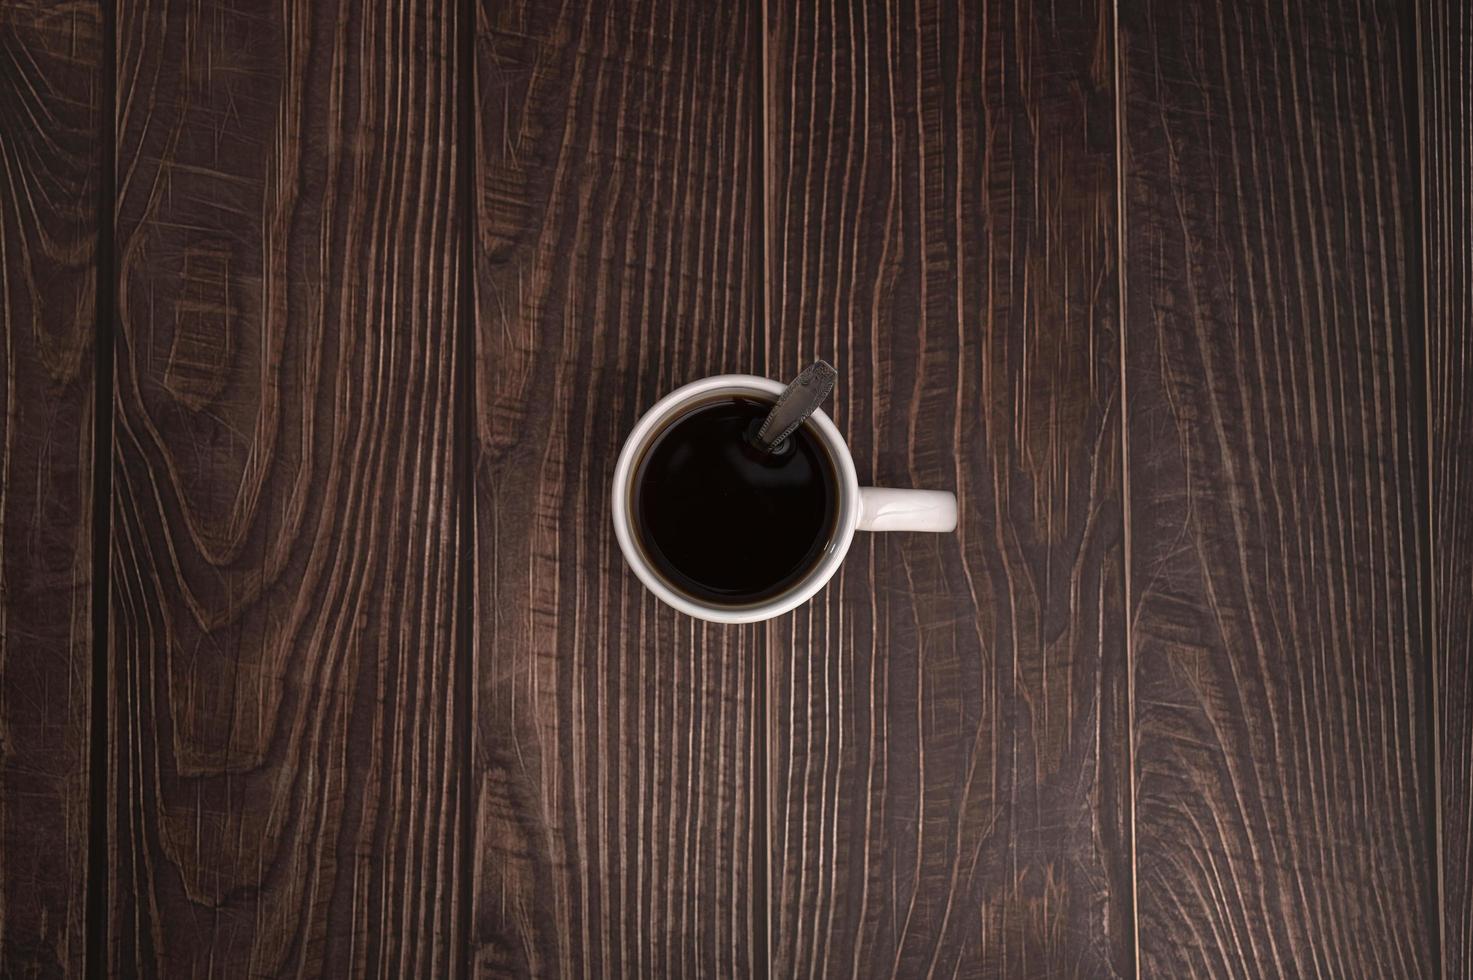 adore boire du café, des tasses à café sont sur la table photo